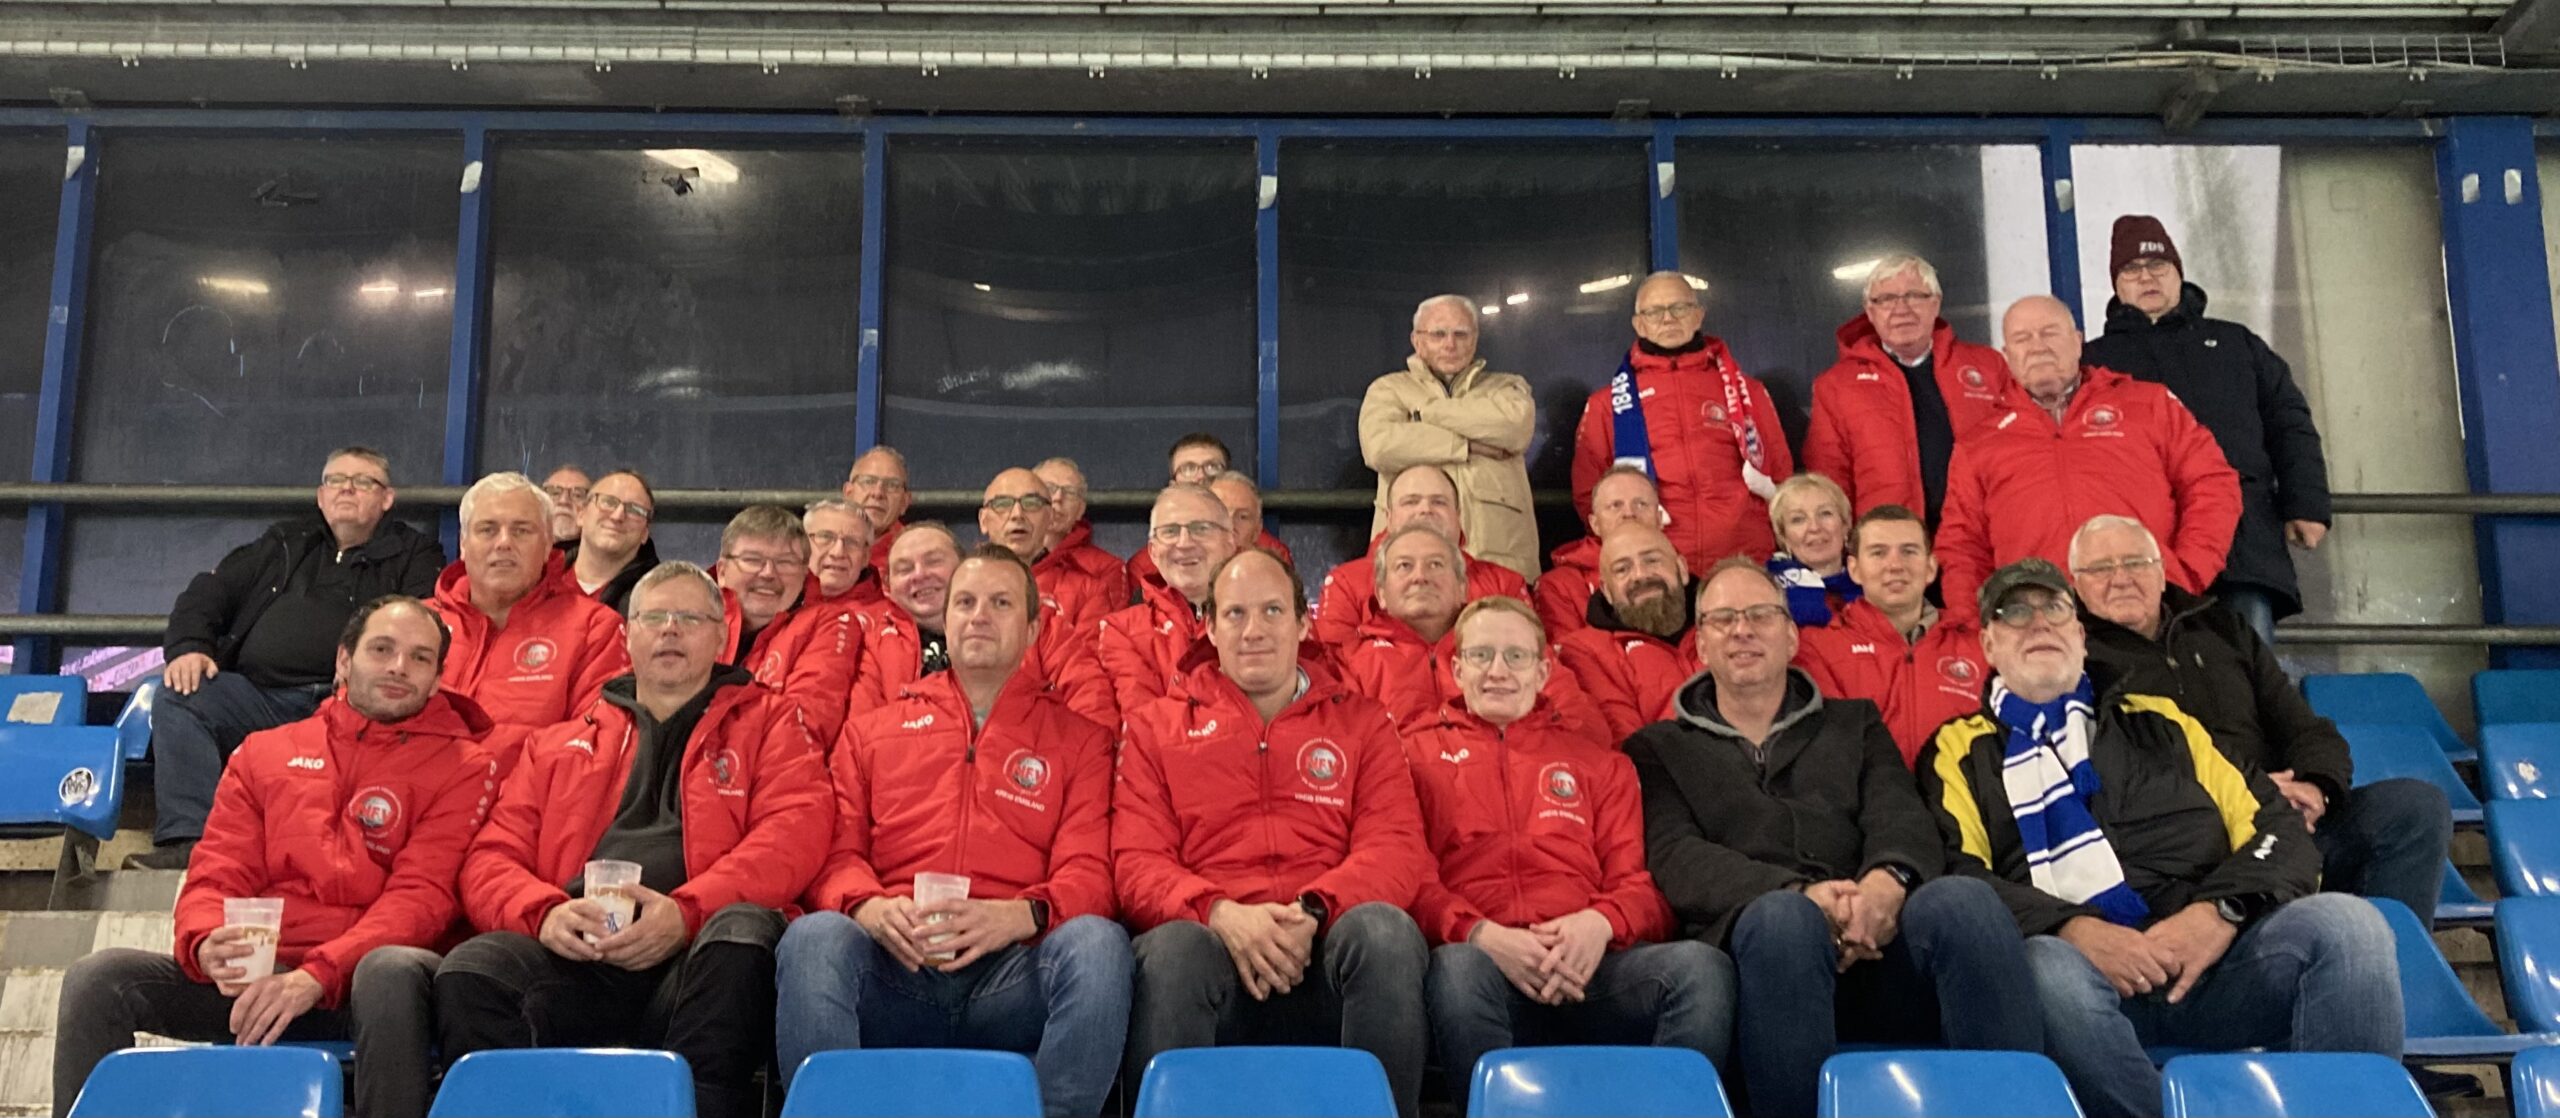 Gleich mehrere ehrenamtliche Mitglieder de NFV Kreis Emsland besuchten das Vonovia Ruhrstadion. Foto: NFV Kreis Emsland